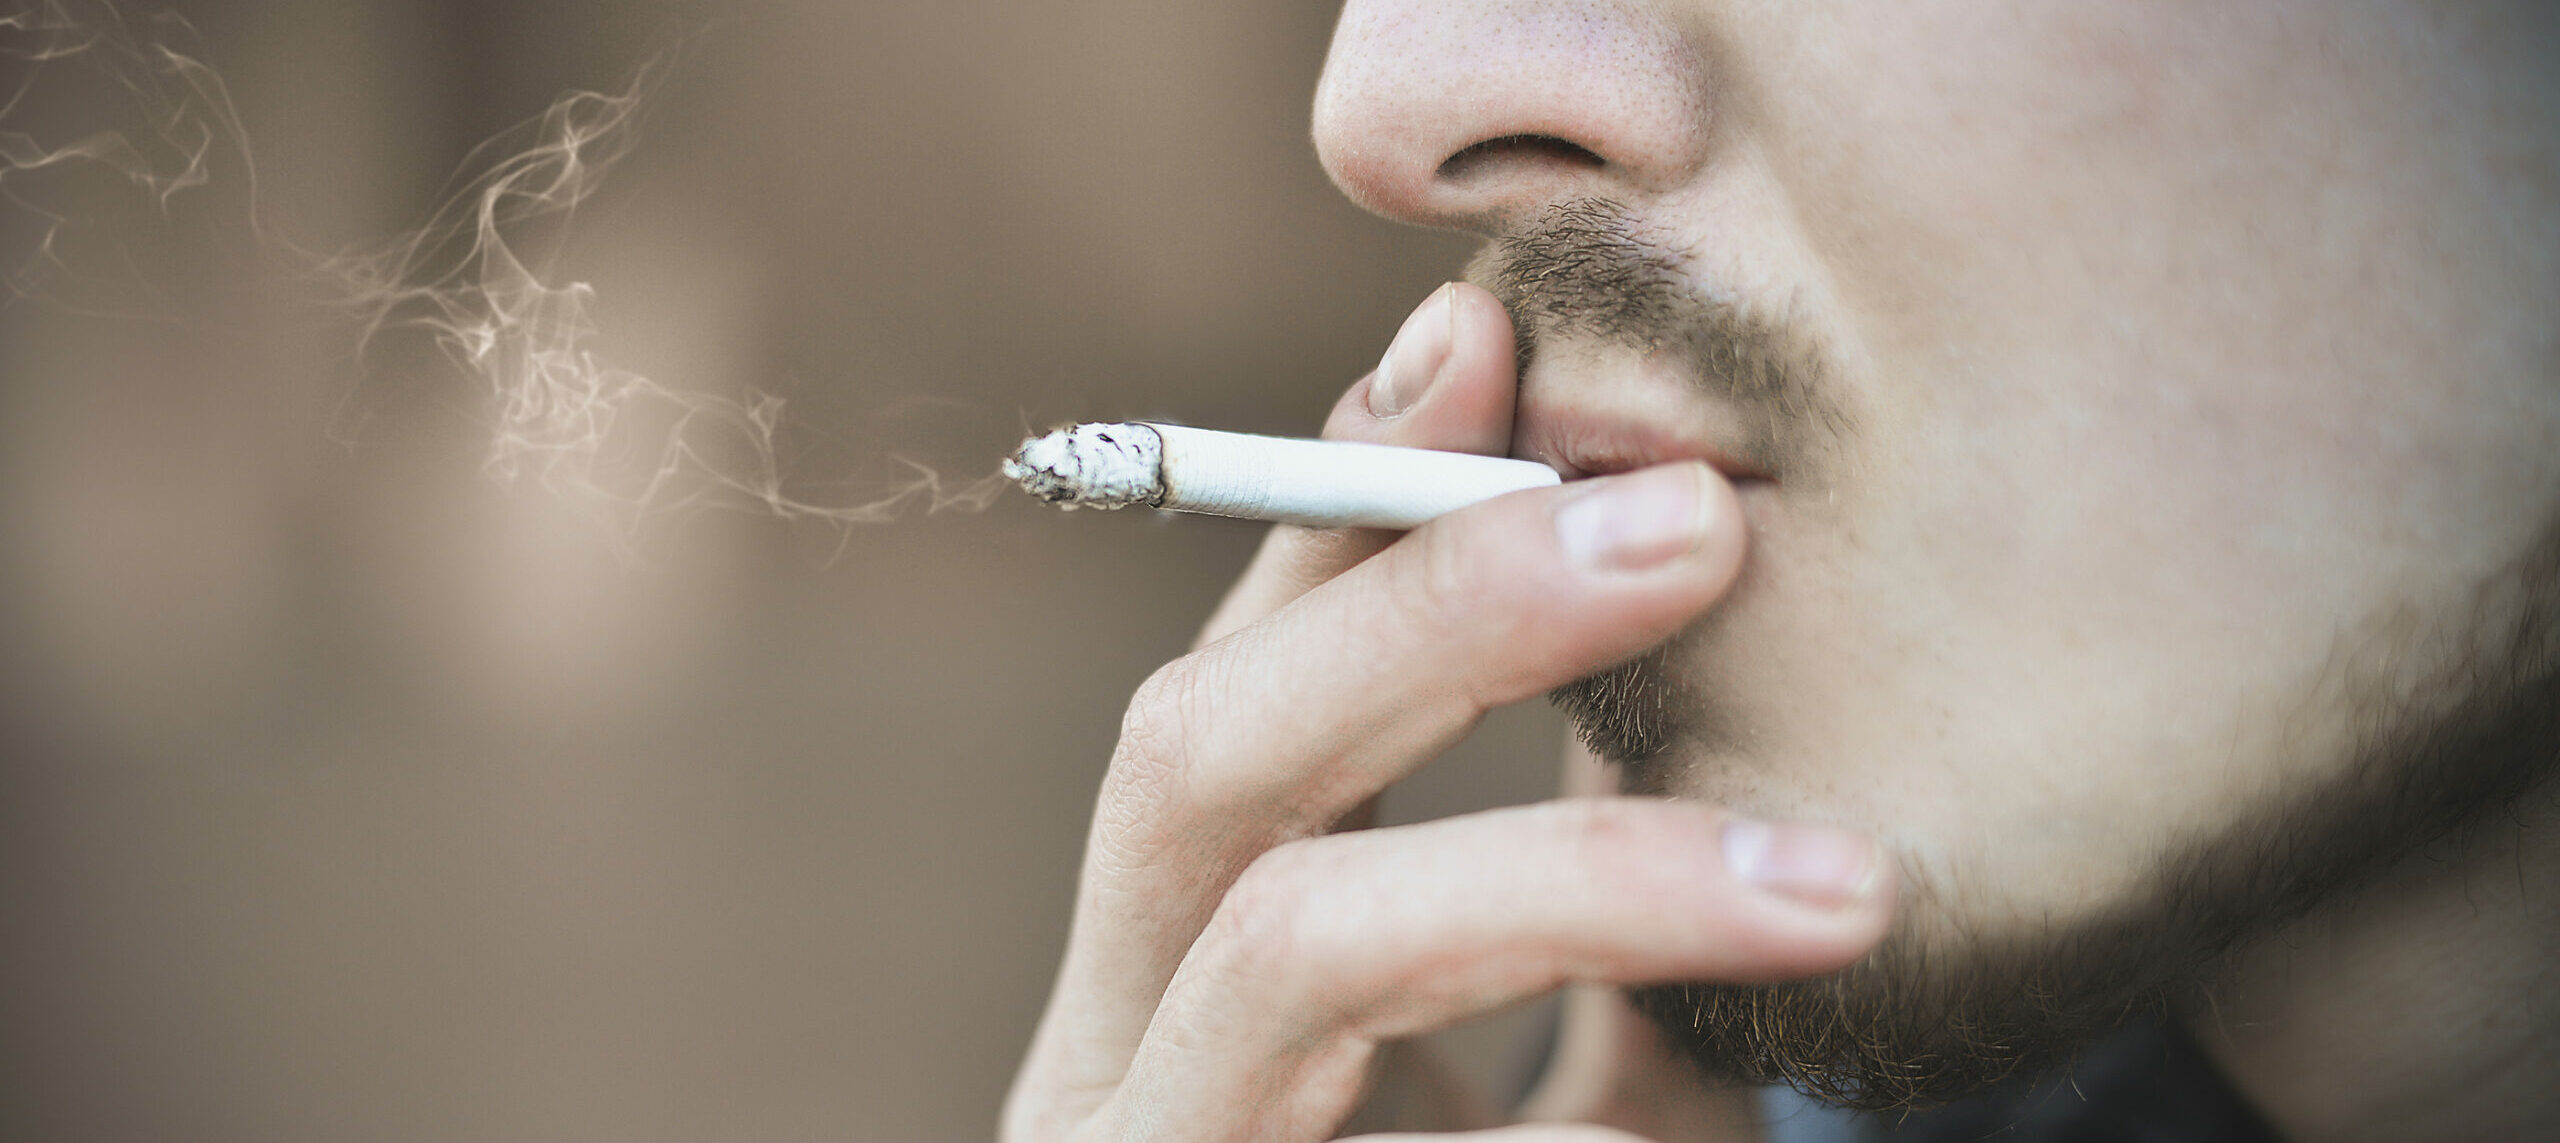 Close up of a smoking cigarette